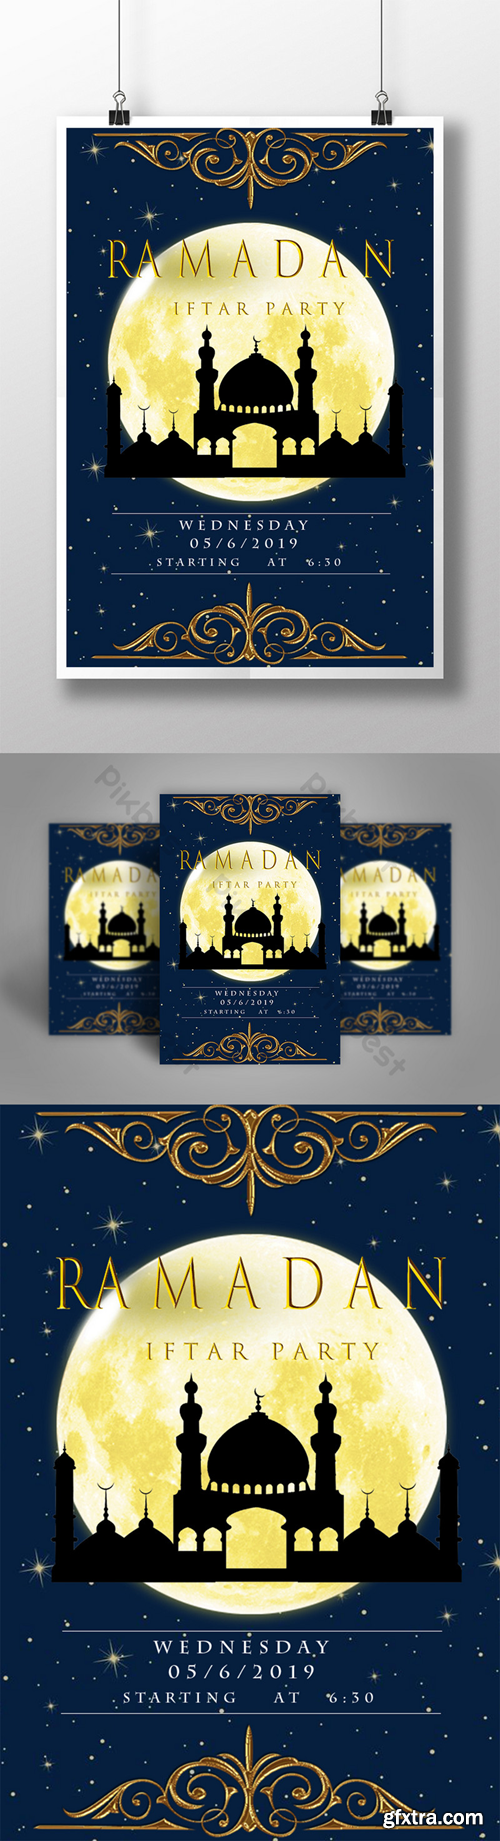 Ramadan iftar party poster Template PSD